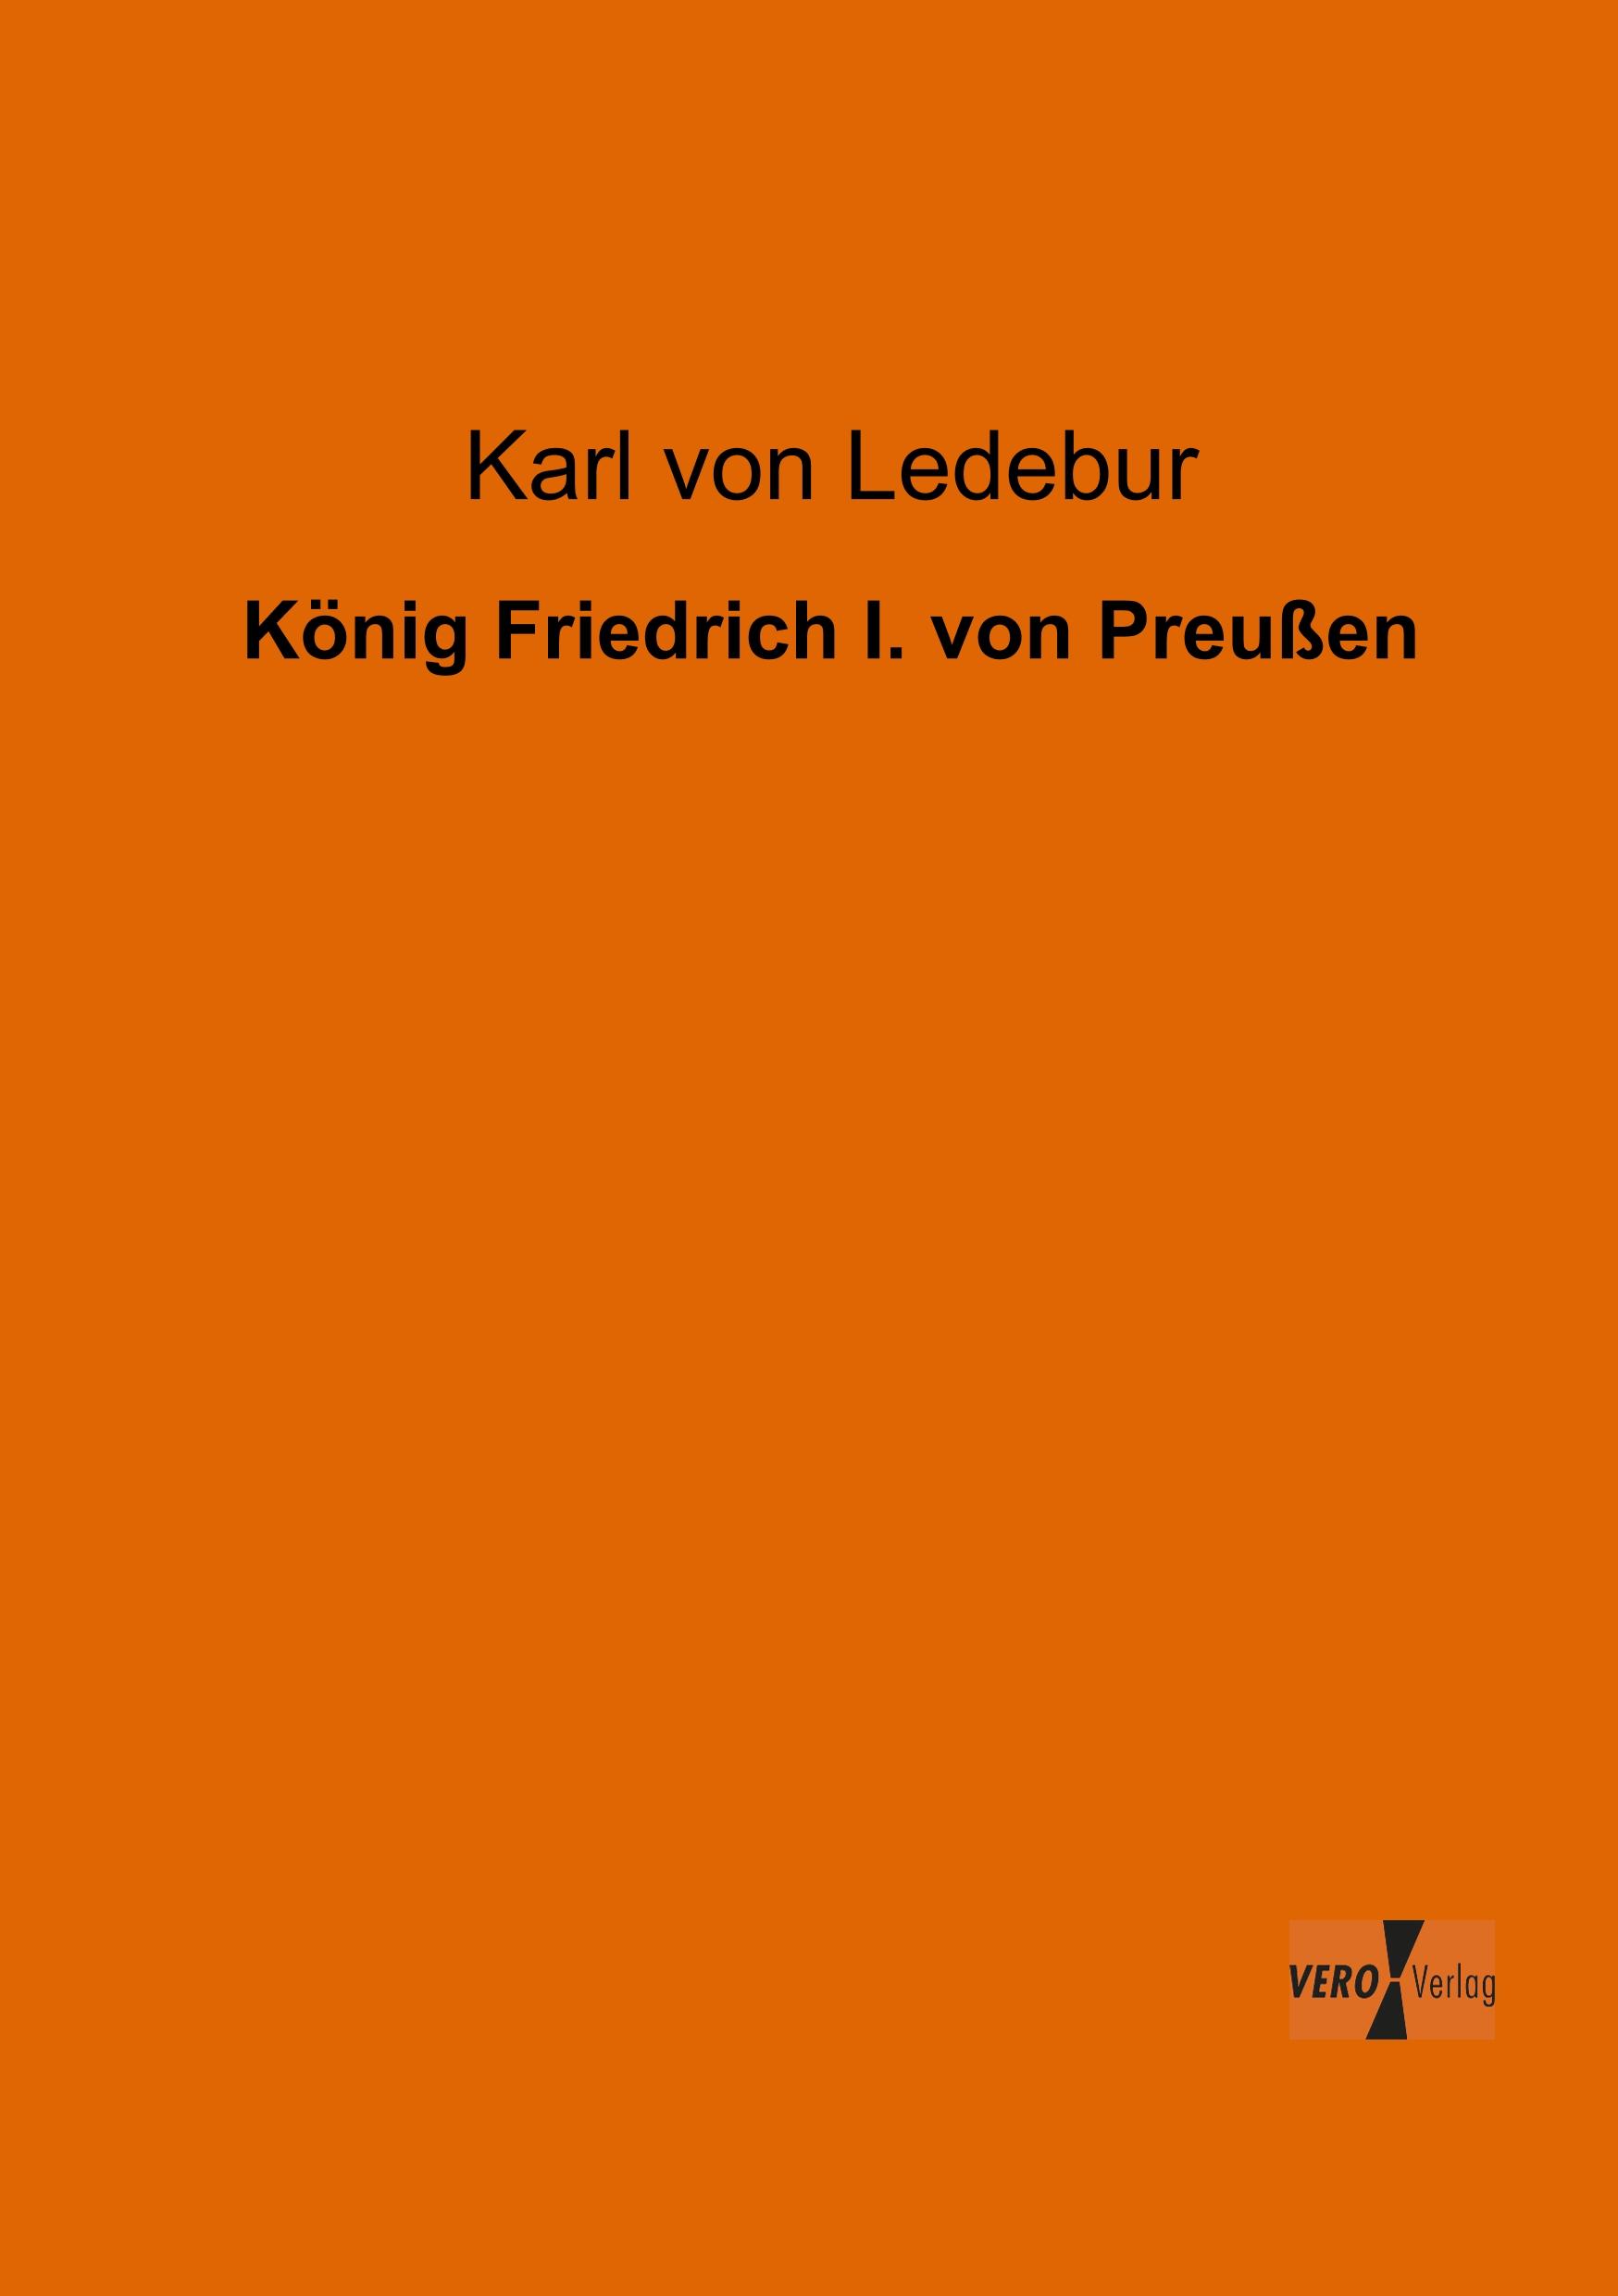 Koenig Friedrich I. von Preussen - Ledebur, Karl  von